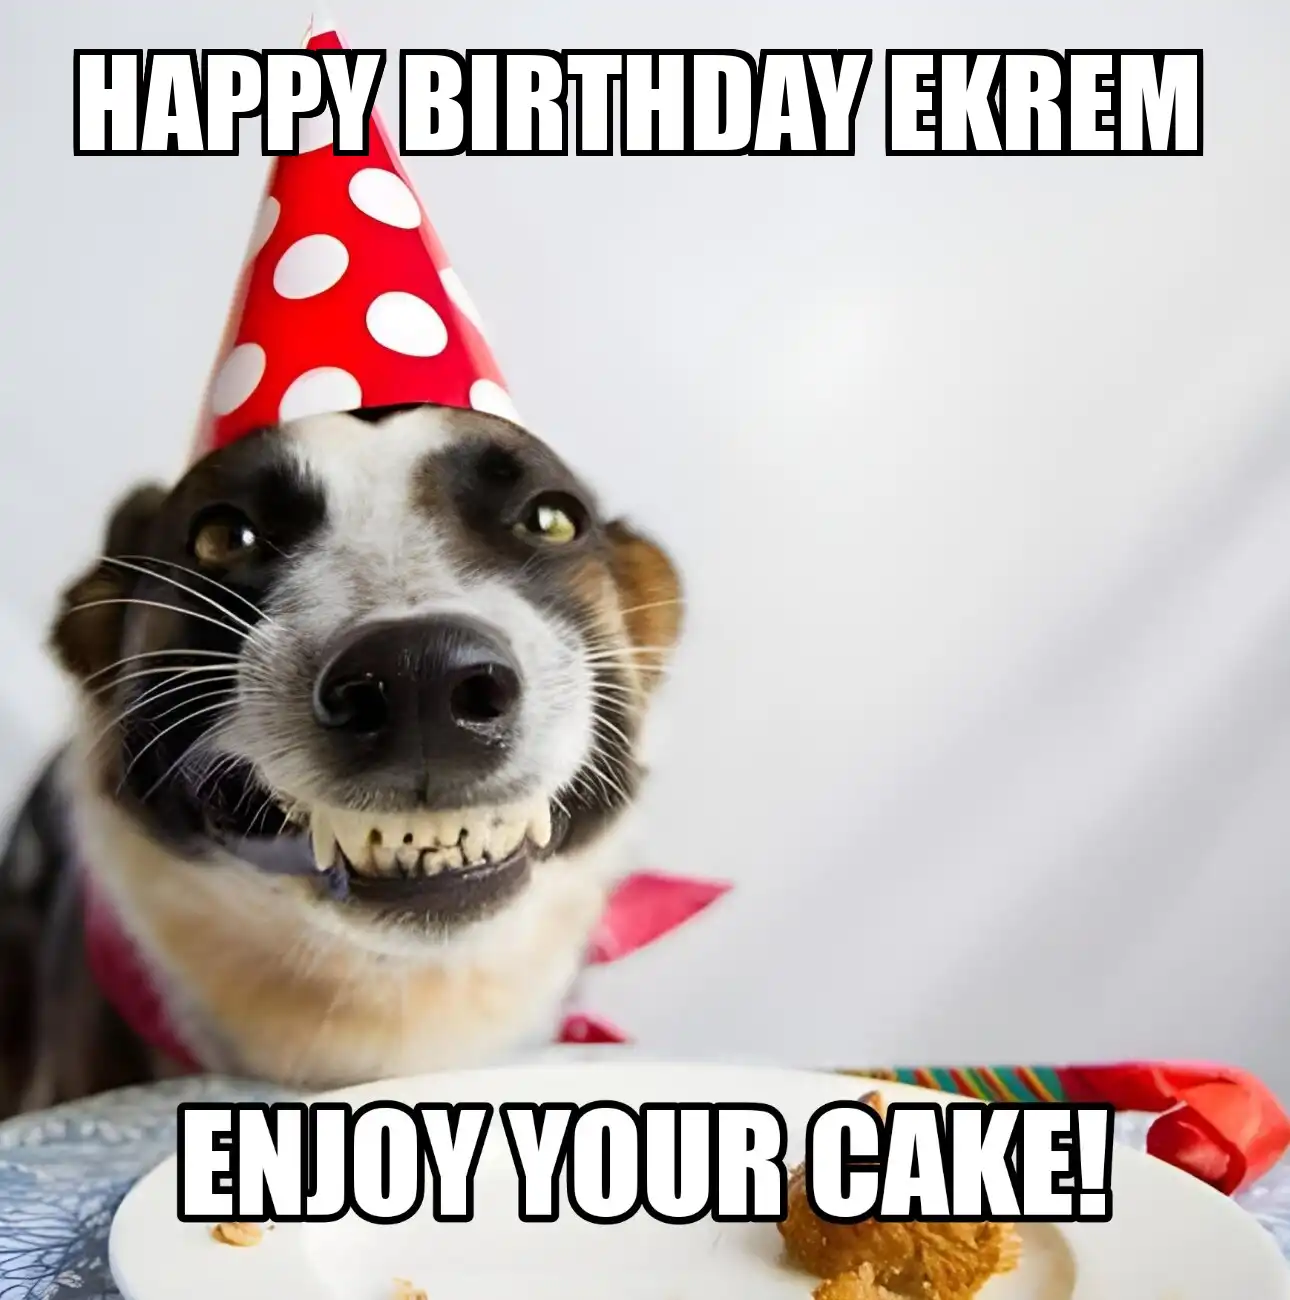 Happy Birthday Ekrem Enjoy Your Cake Dog Meme